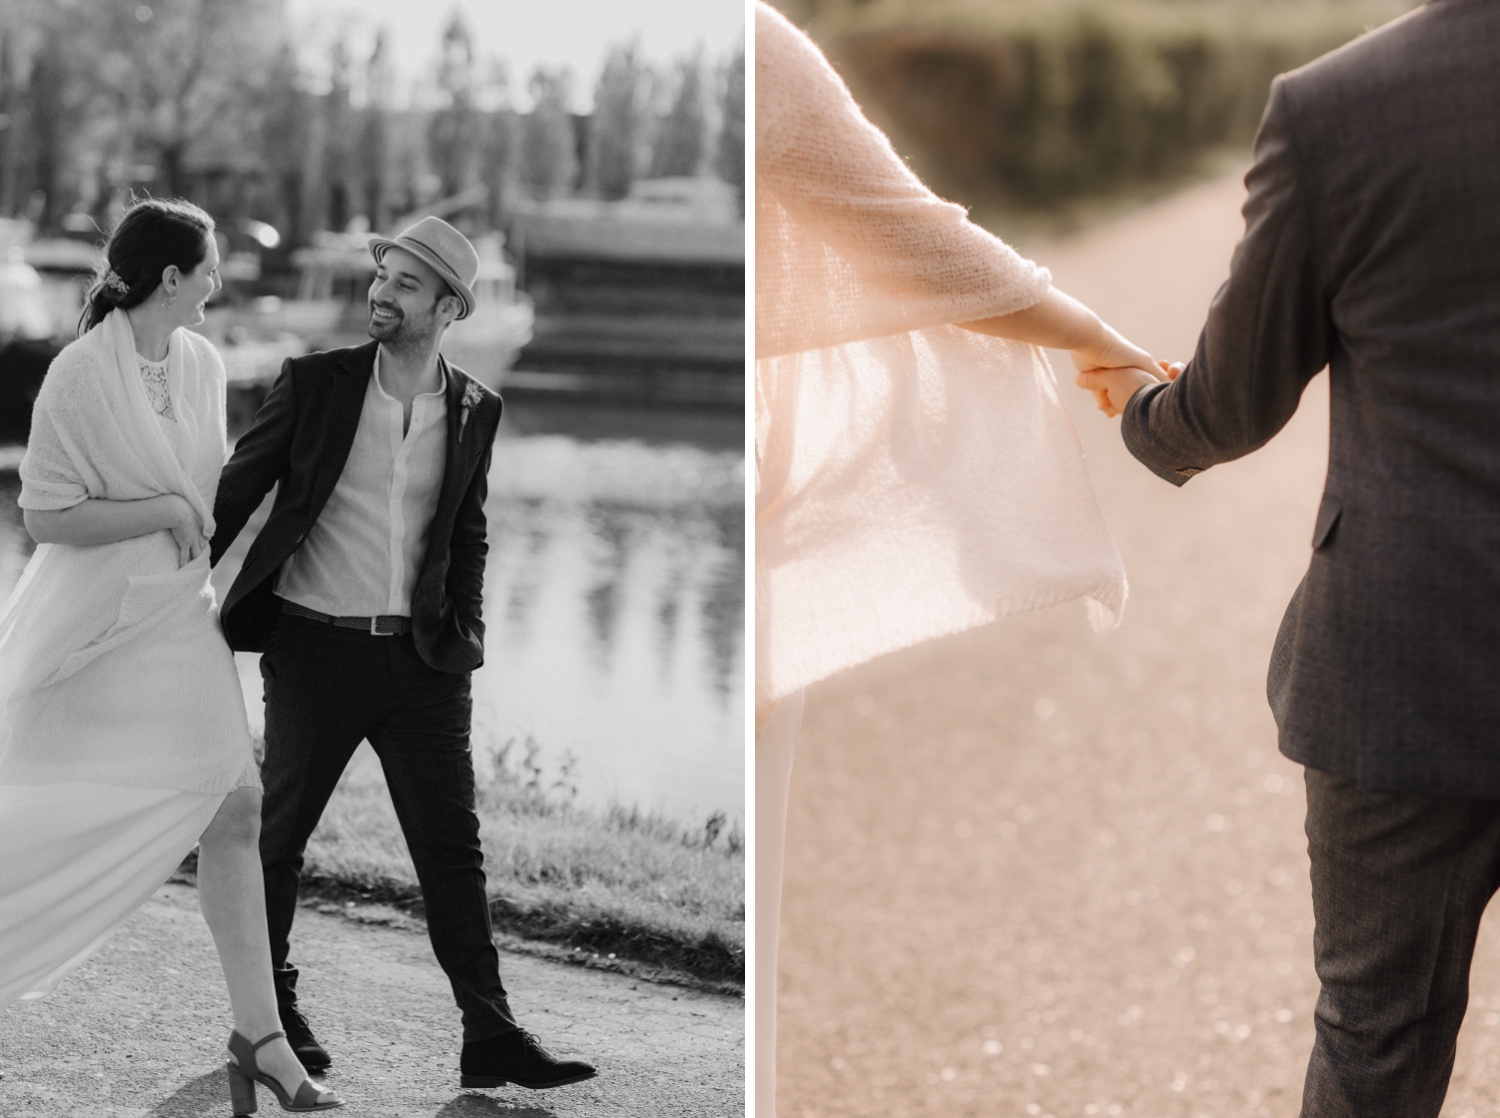 Huwelijksfotograaf Limburg - bruidspaar wandelt langs kaaien in Antwerpen tijdens fotoshoot